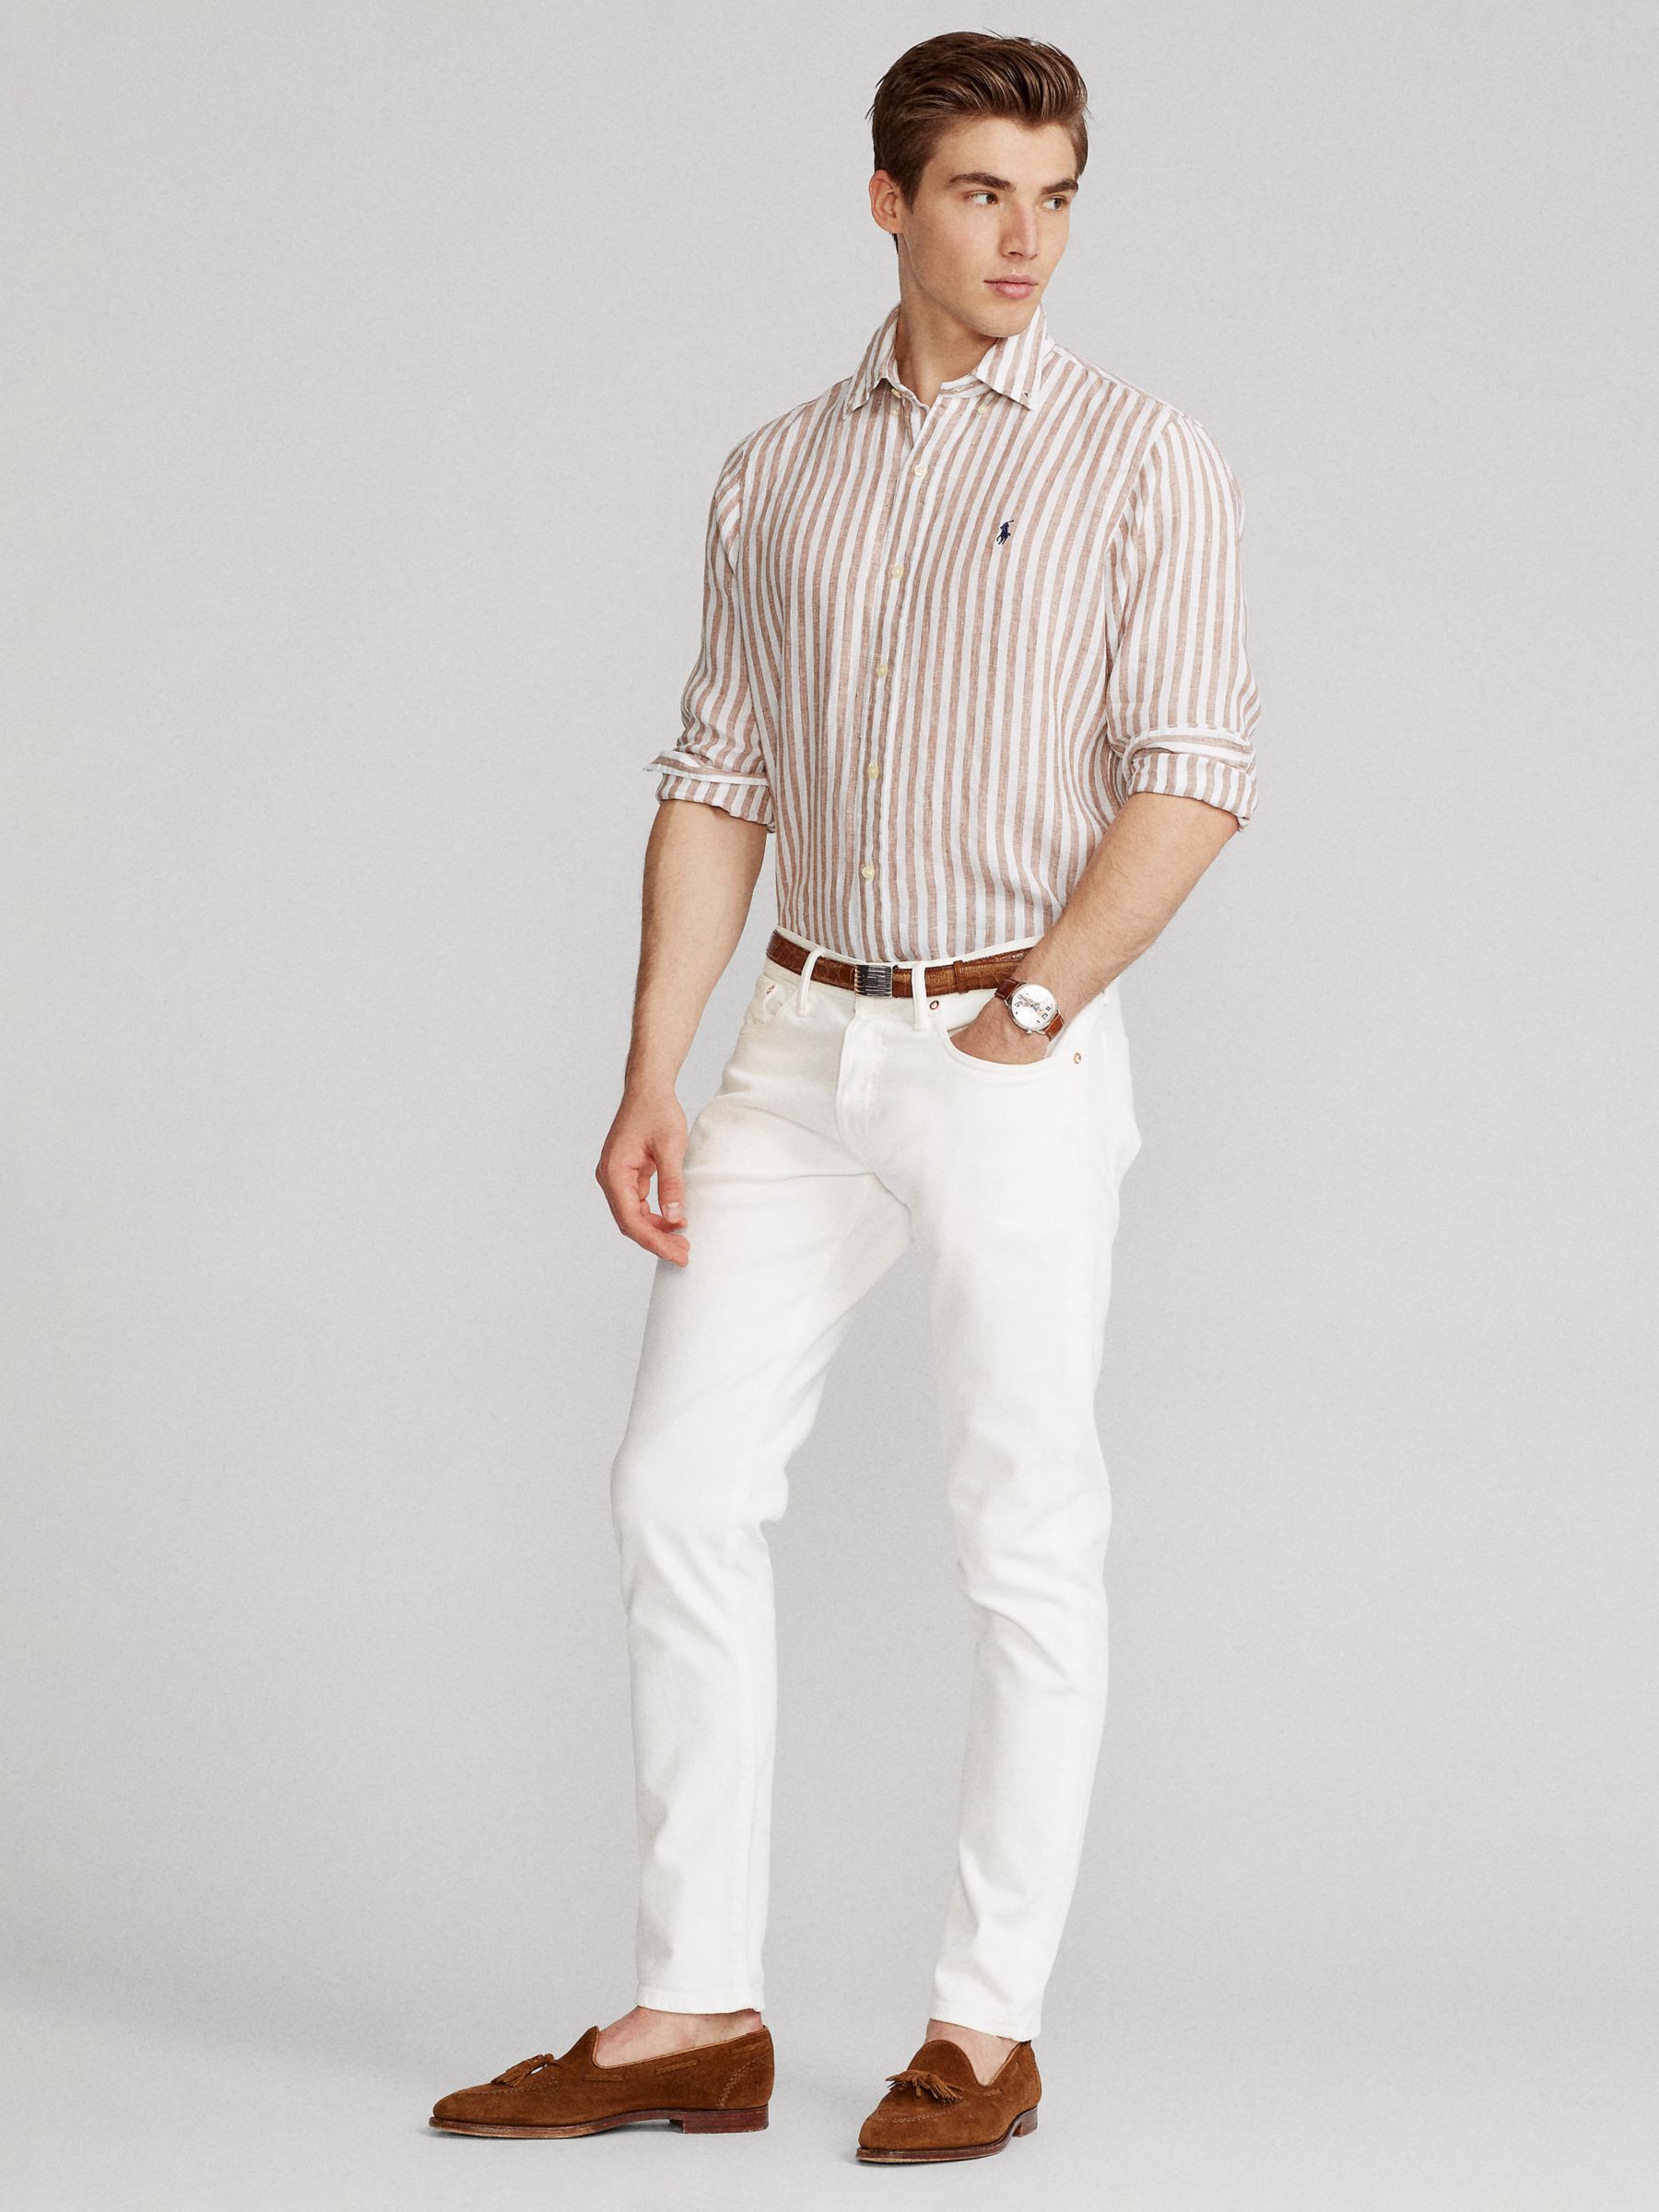 Ralph Lauren Stripe Linen Long Sleeve Shirt, Khaki/White, S